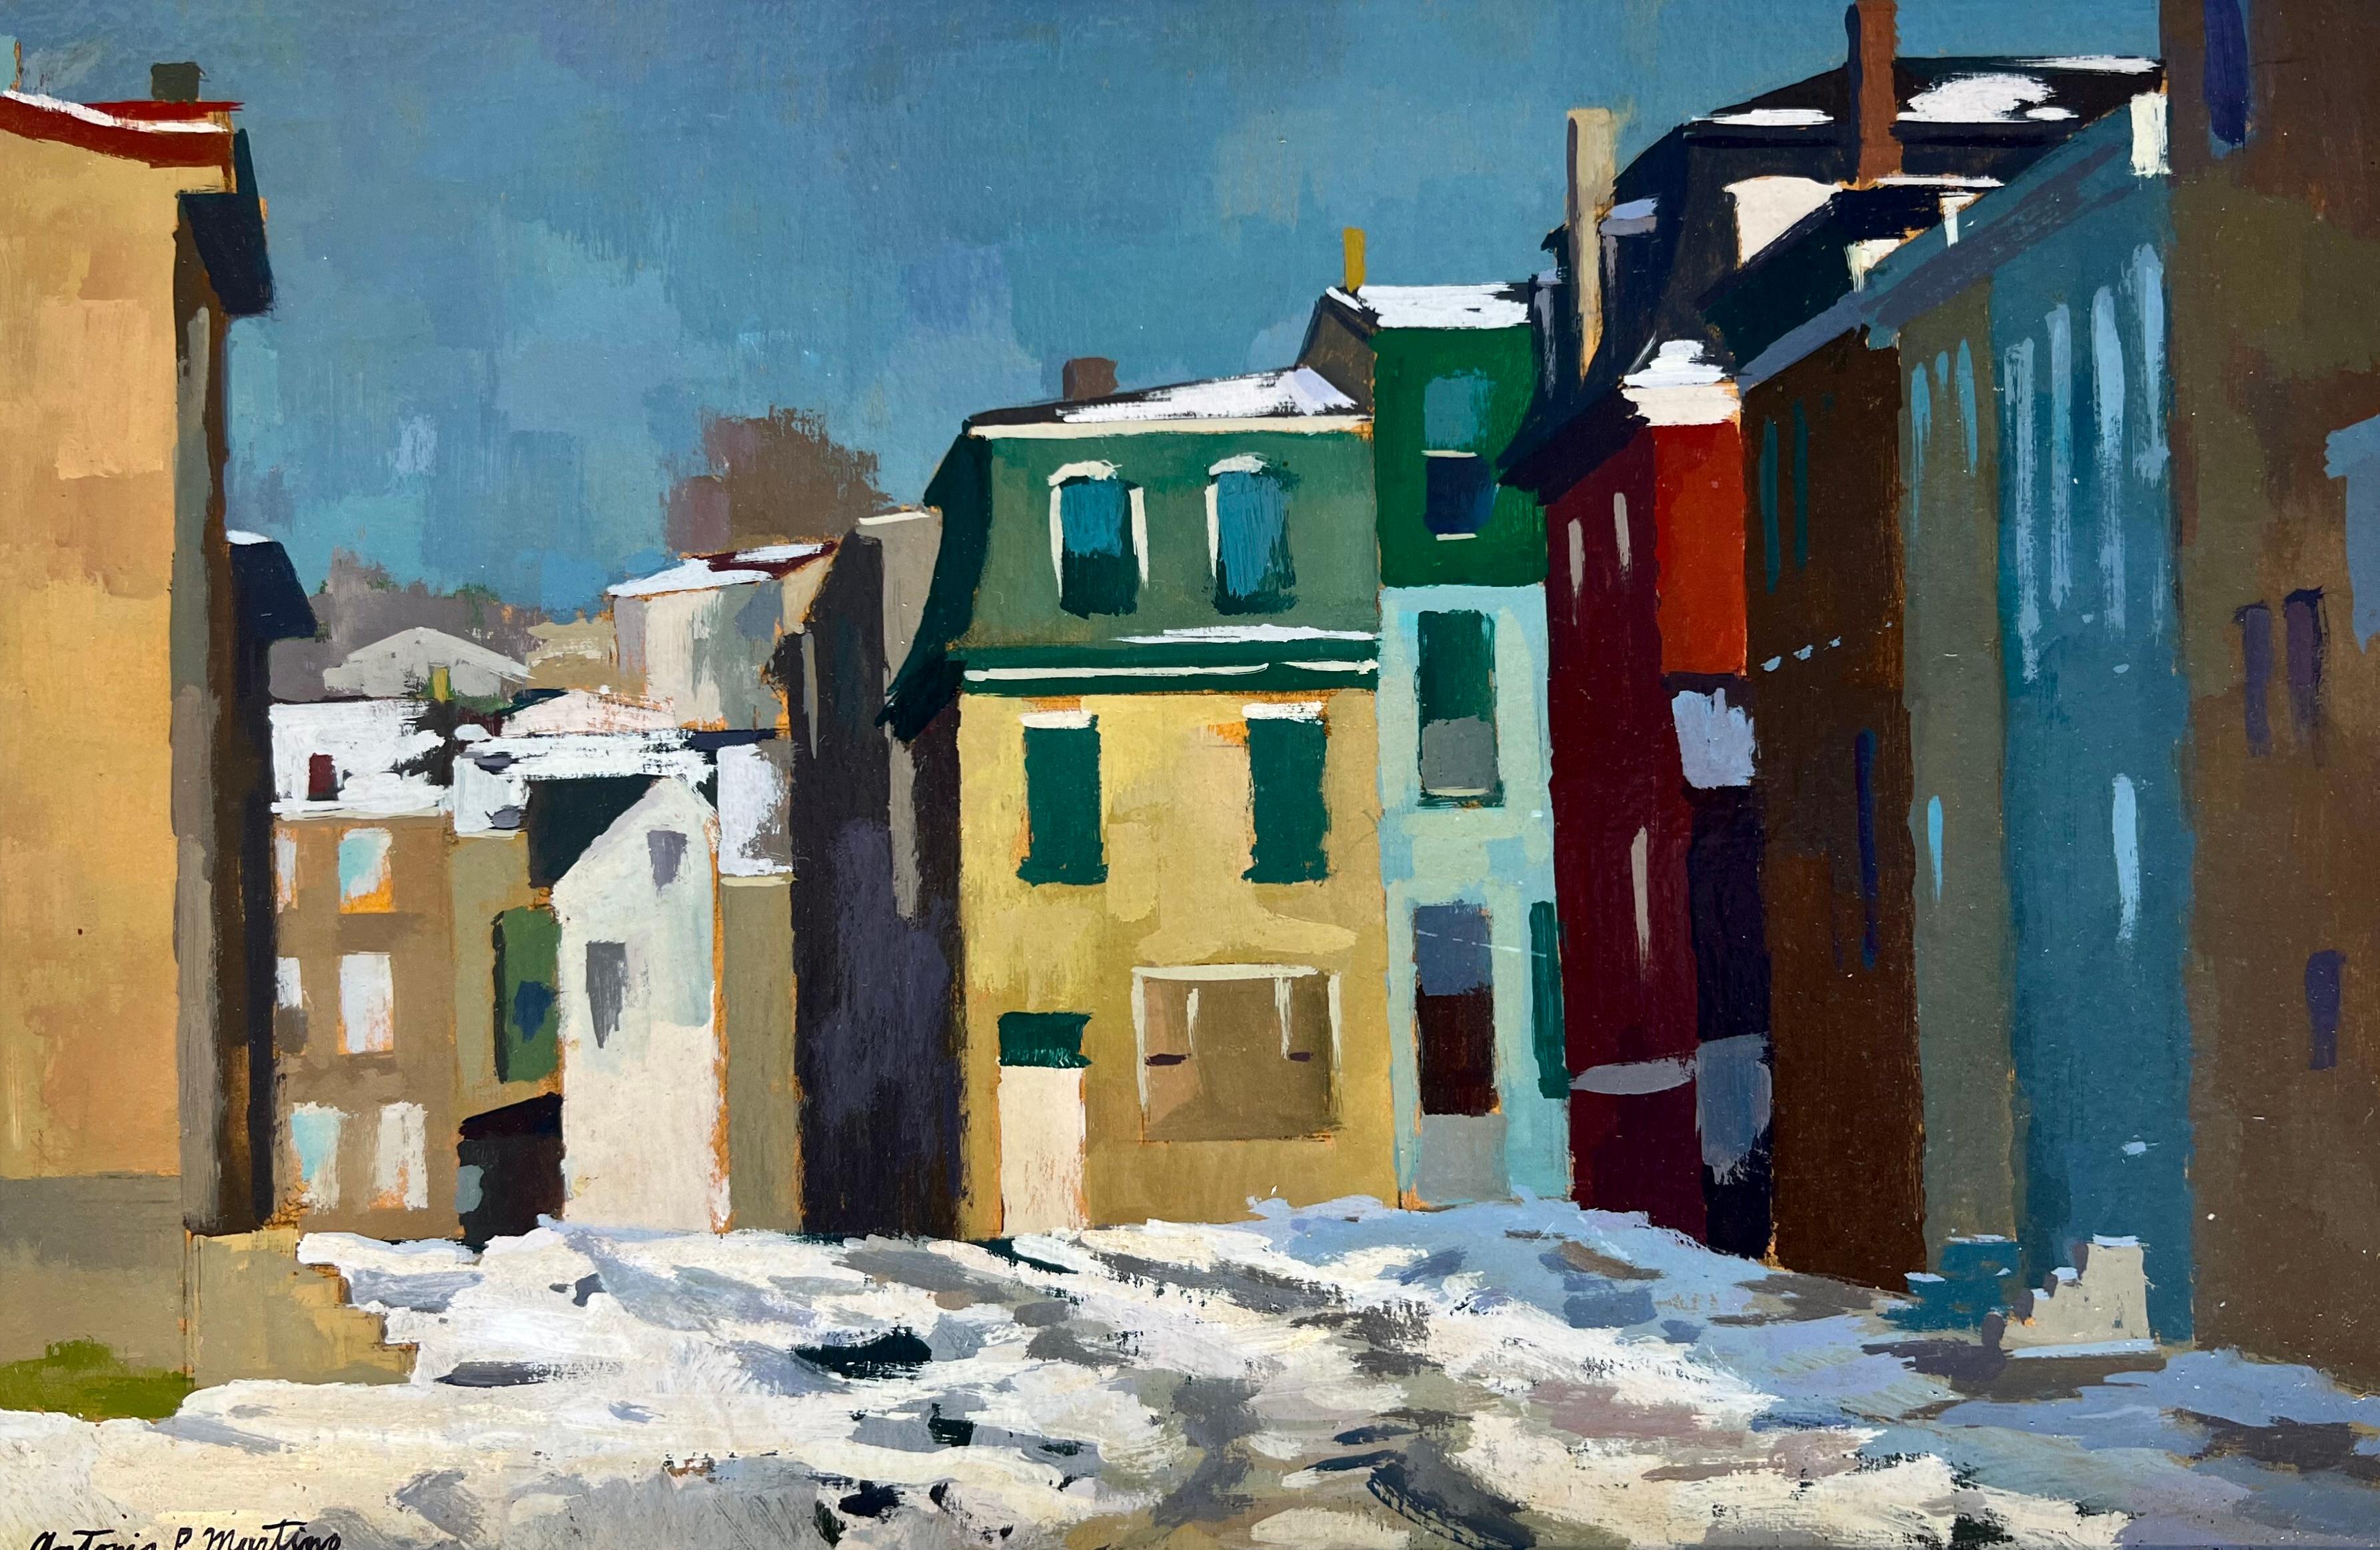 Januar in der Stadt (Amerikanischer Impressionismus), Painting, von Antonio Pietro Martino